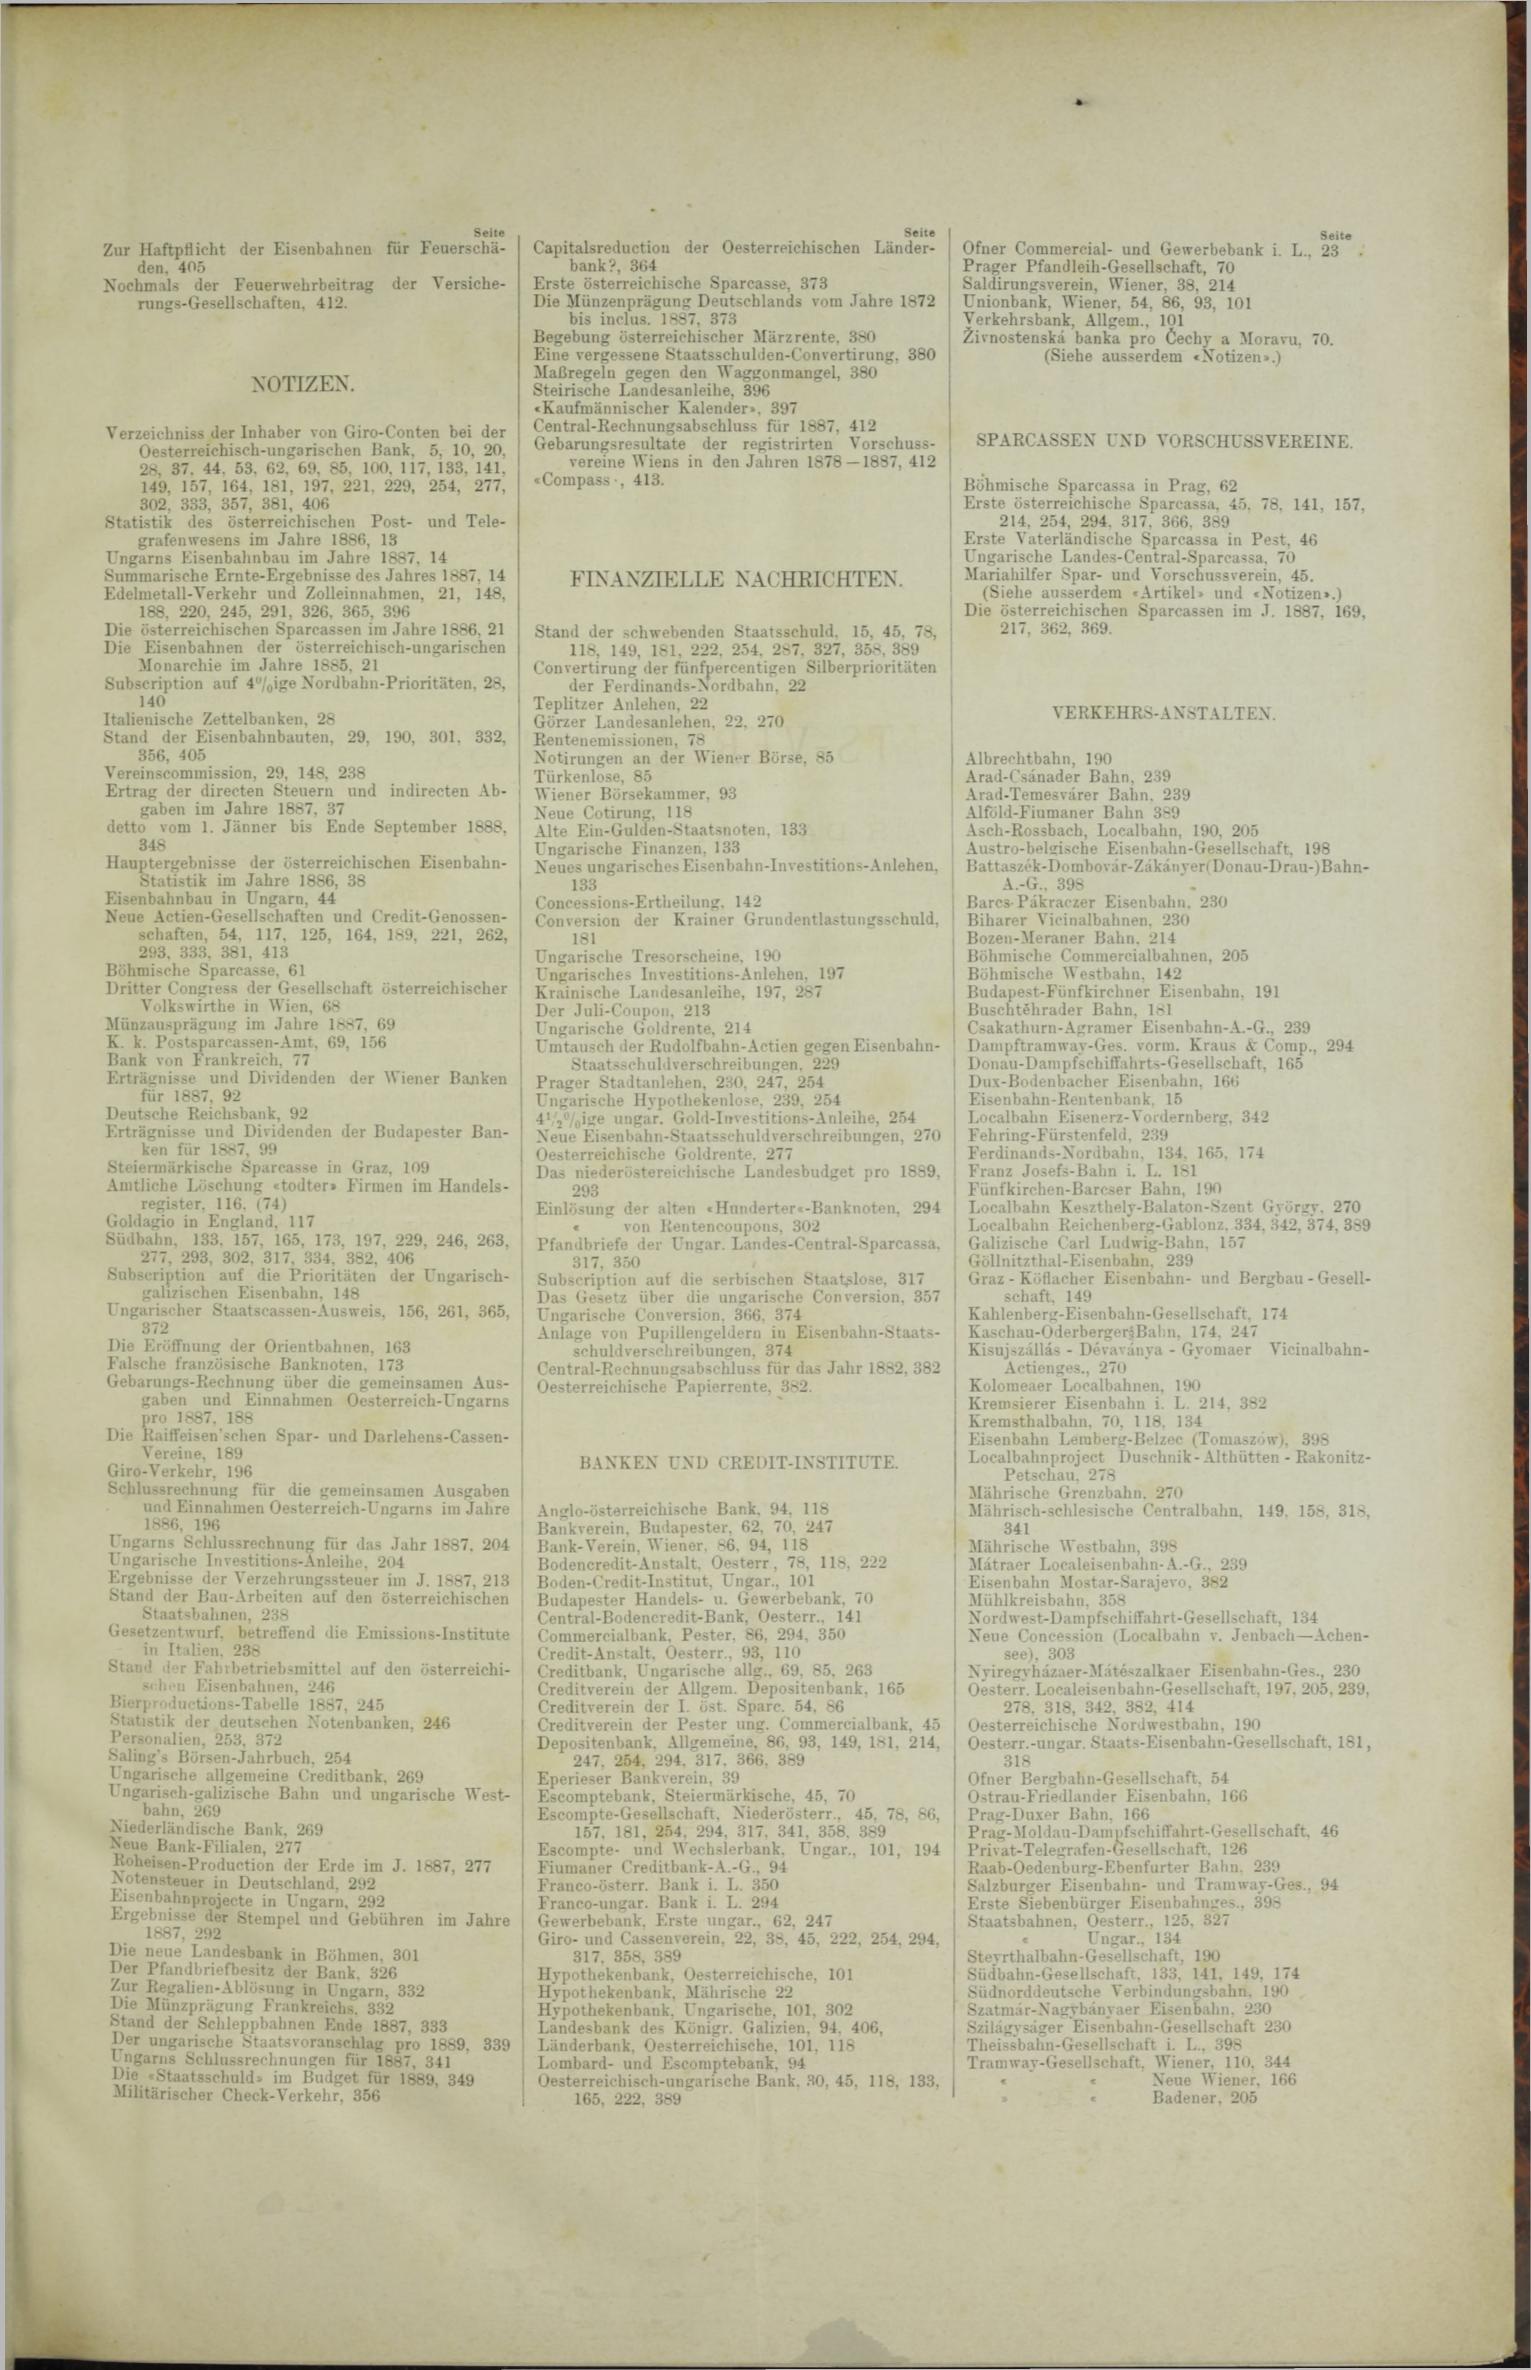 Der Tresor 01.11.1888 - Seite 11